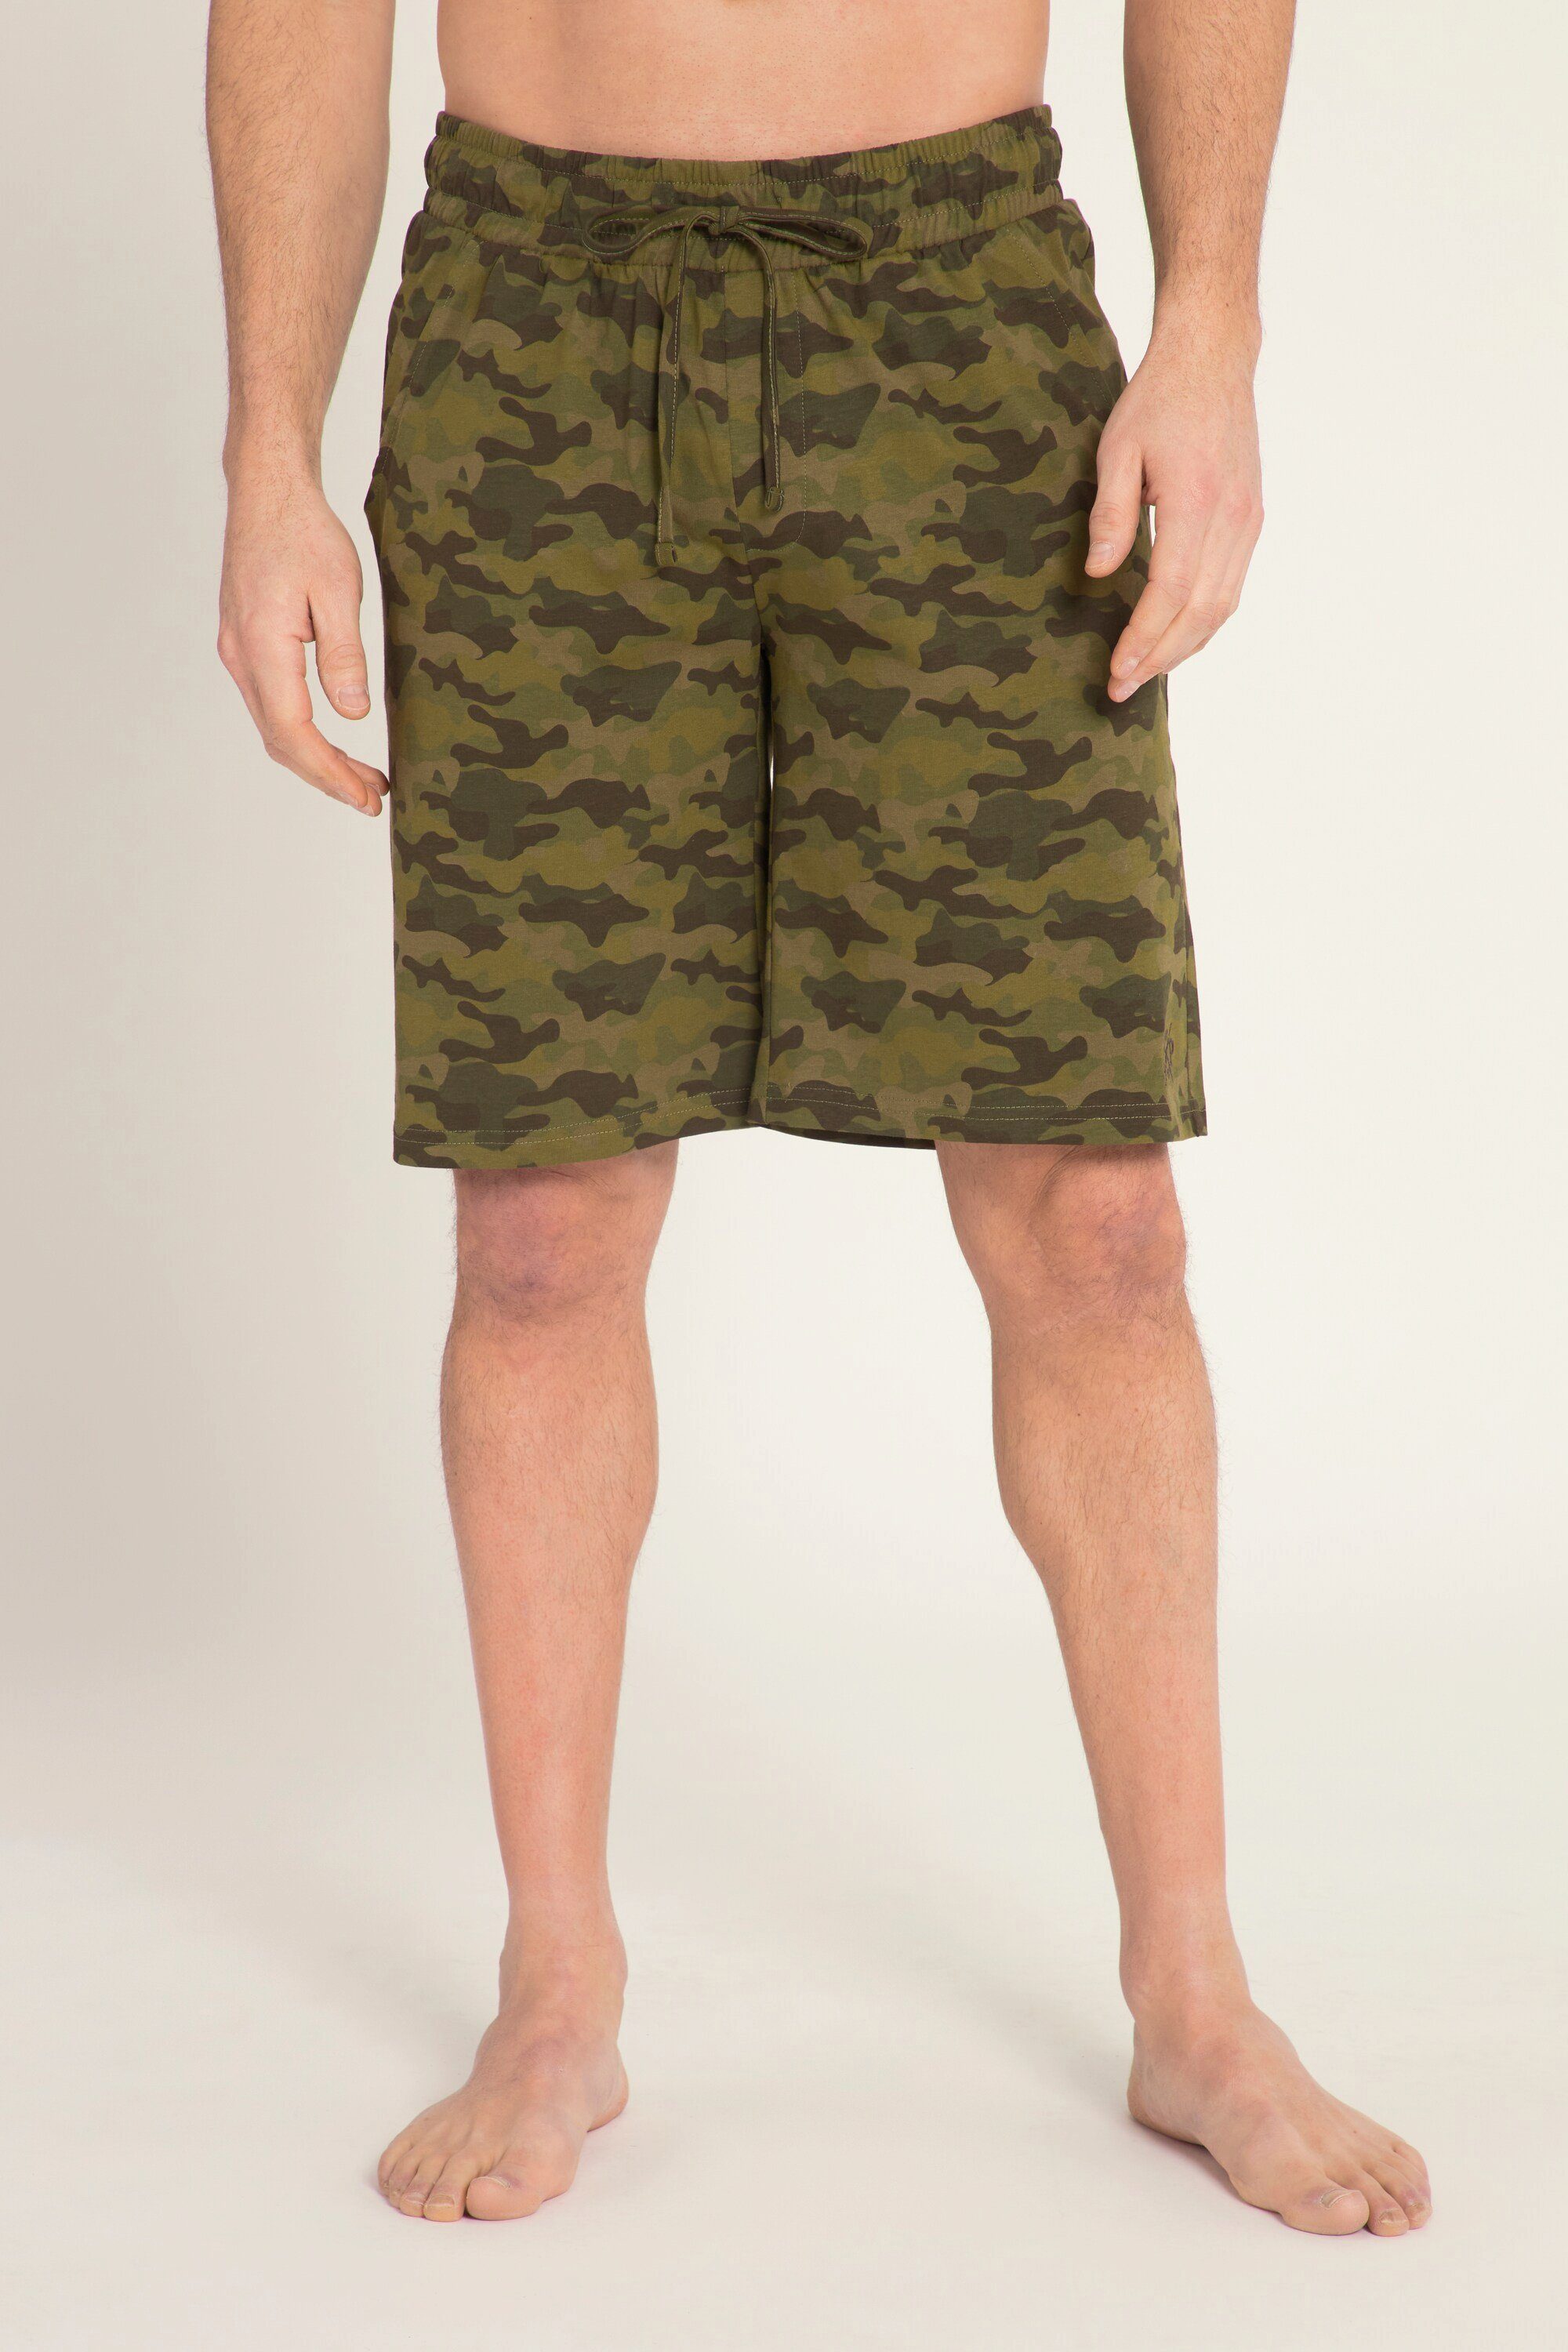 Schlafanzug Print Bermuda Camouflage Shorts Elastikbund JP1880